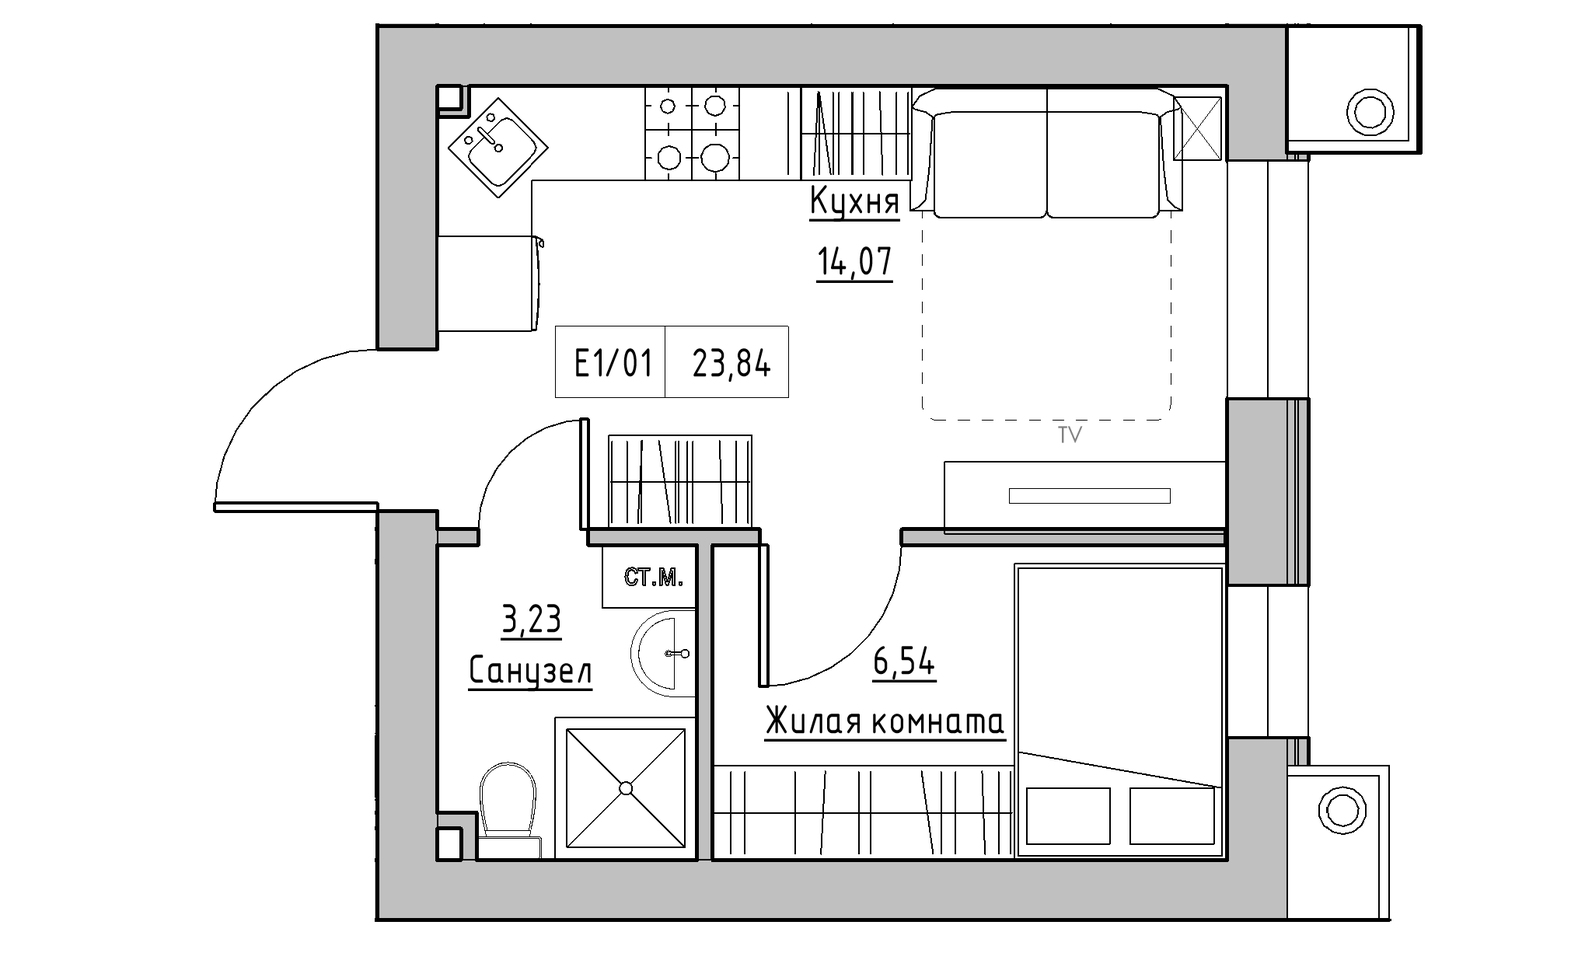 Планування 1-к квартира площею 23.84м2, KS-014-05/0014.